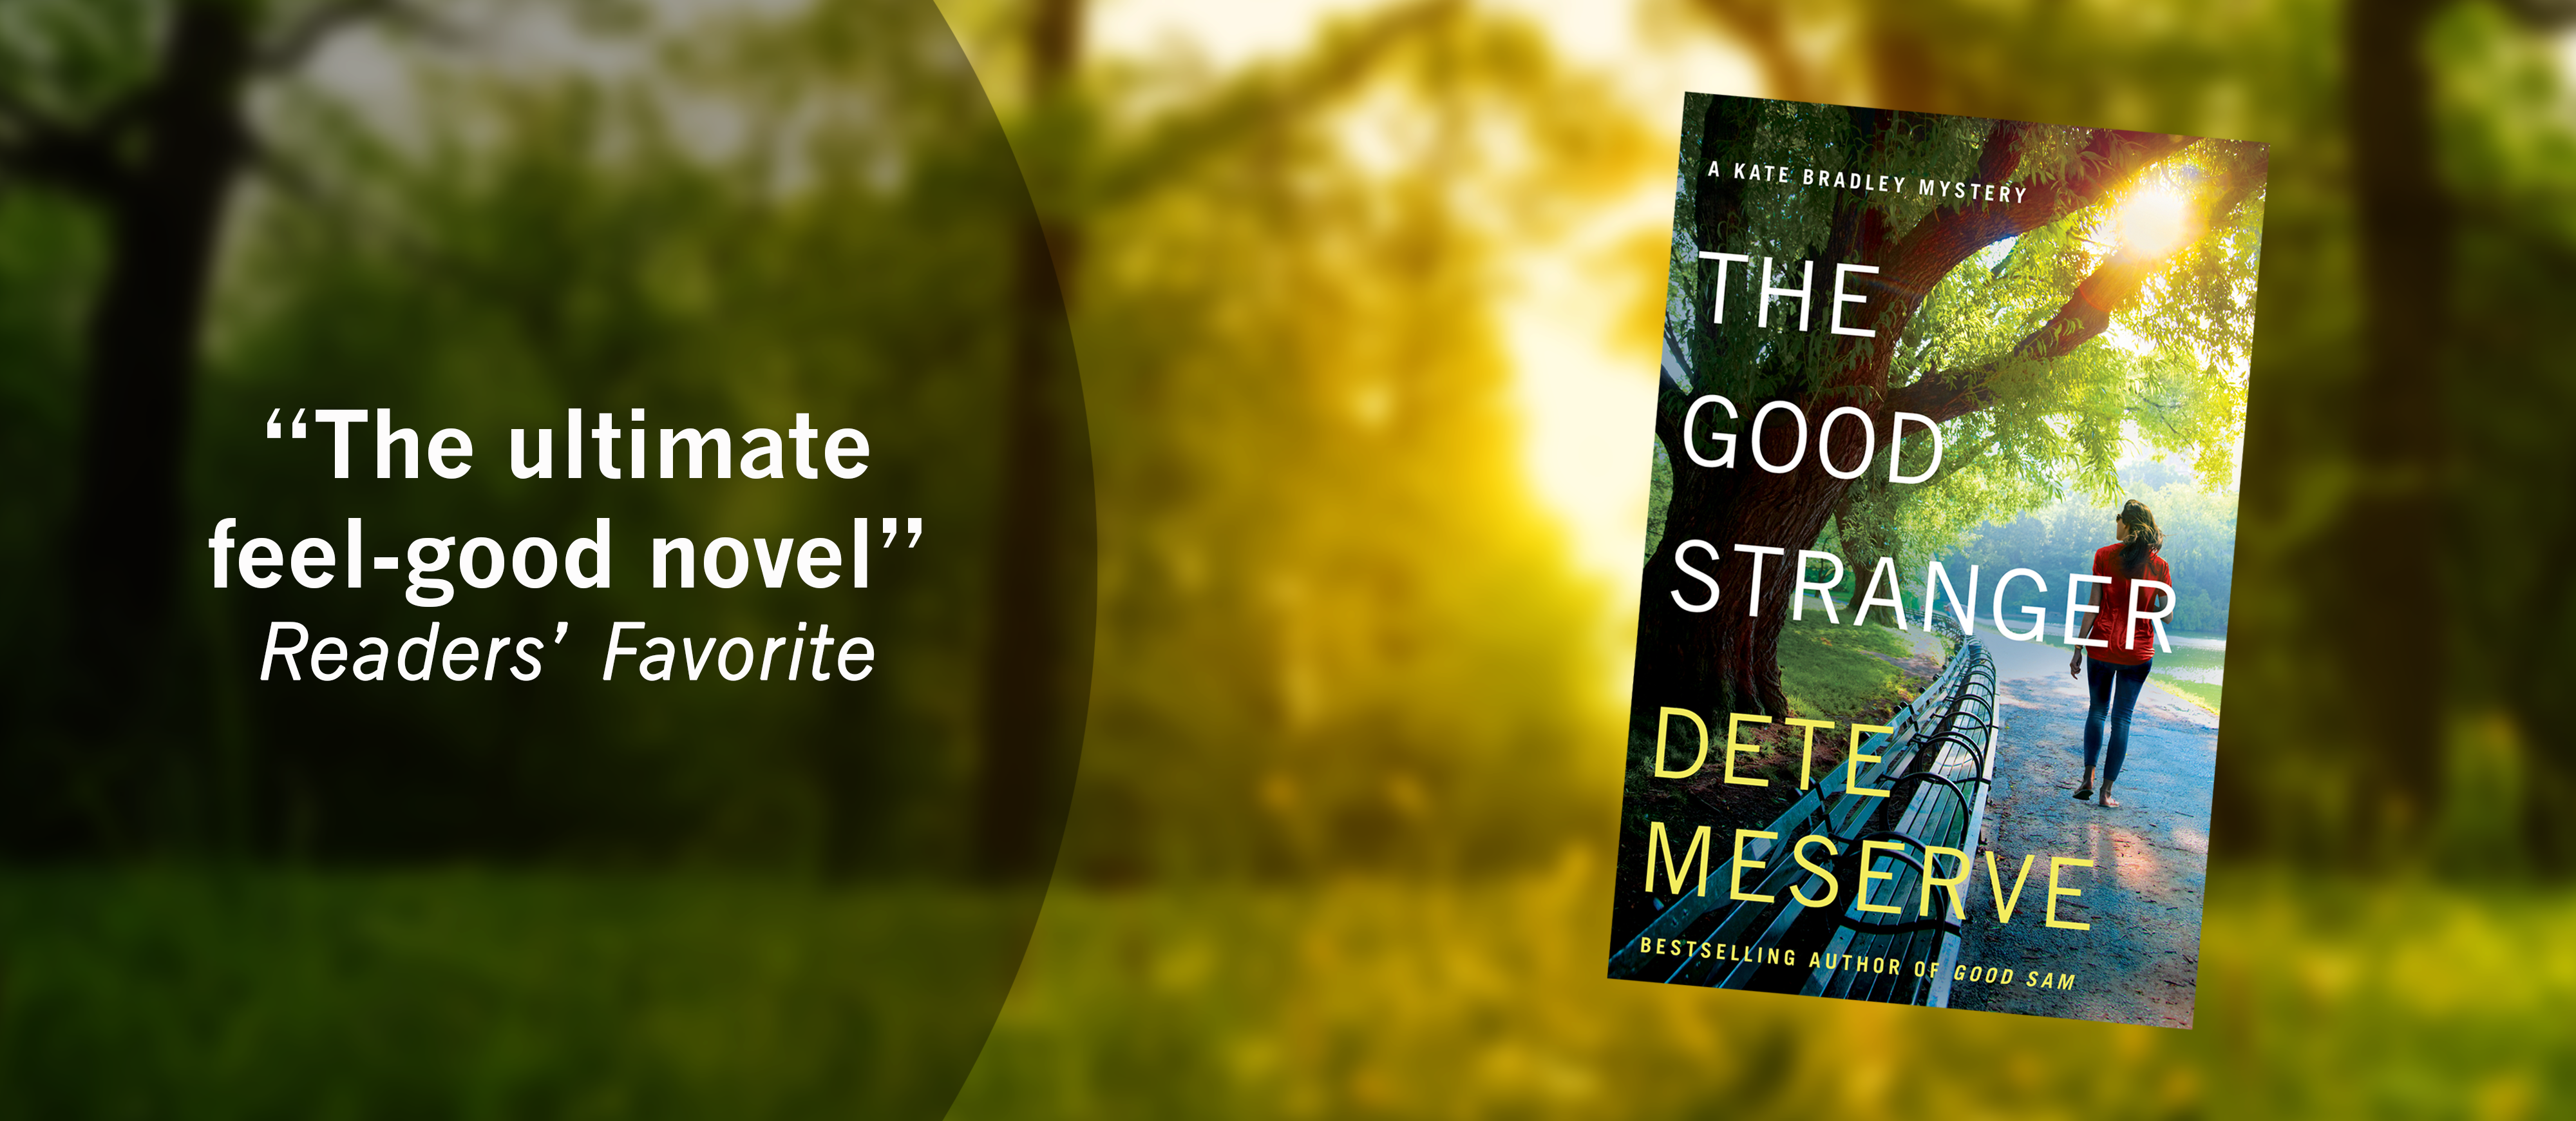 The ultimate feel-good novel - The Good Stranger - Kate Bradley Mystery by Dete Meserve